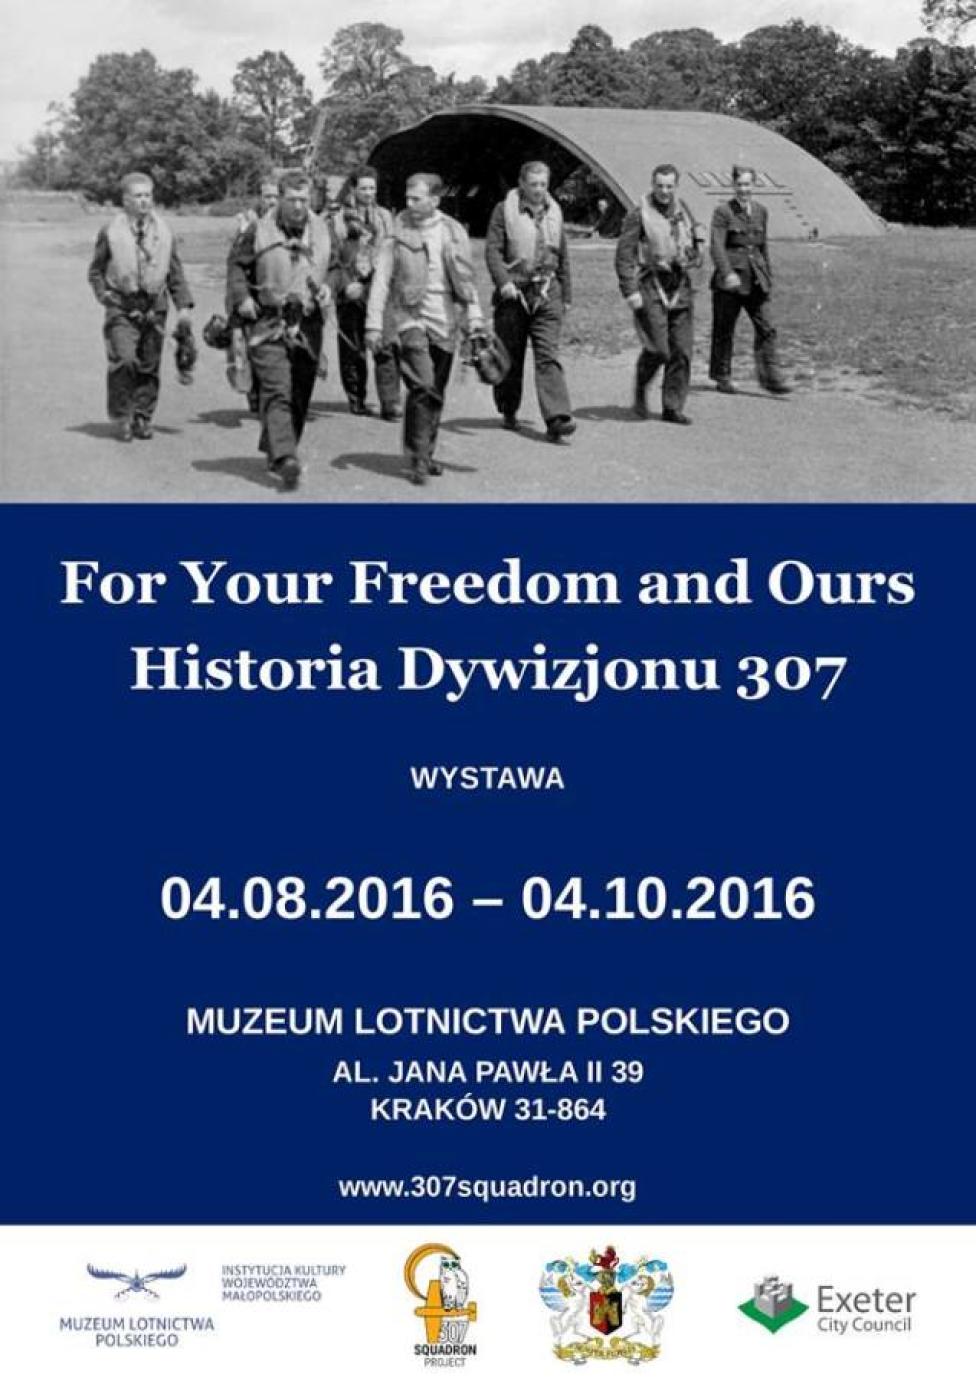 For Your Freedom and Ours. Historia Dywizjonu 307 – wystawa w MLP (fot. muzeumlotnictwa.pl)